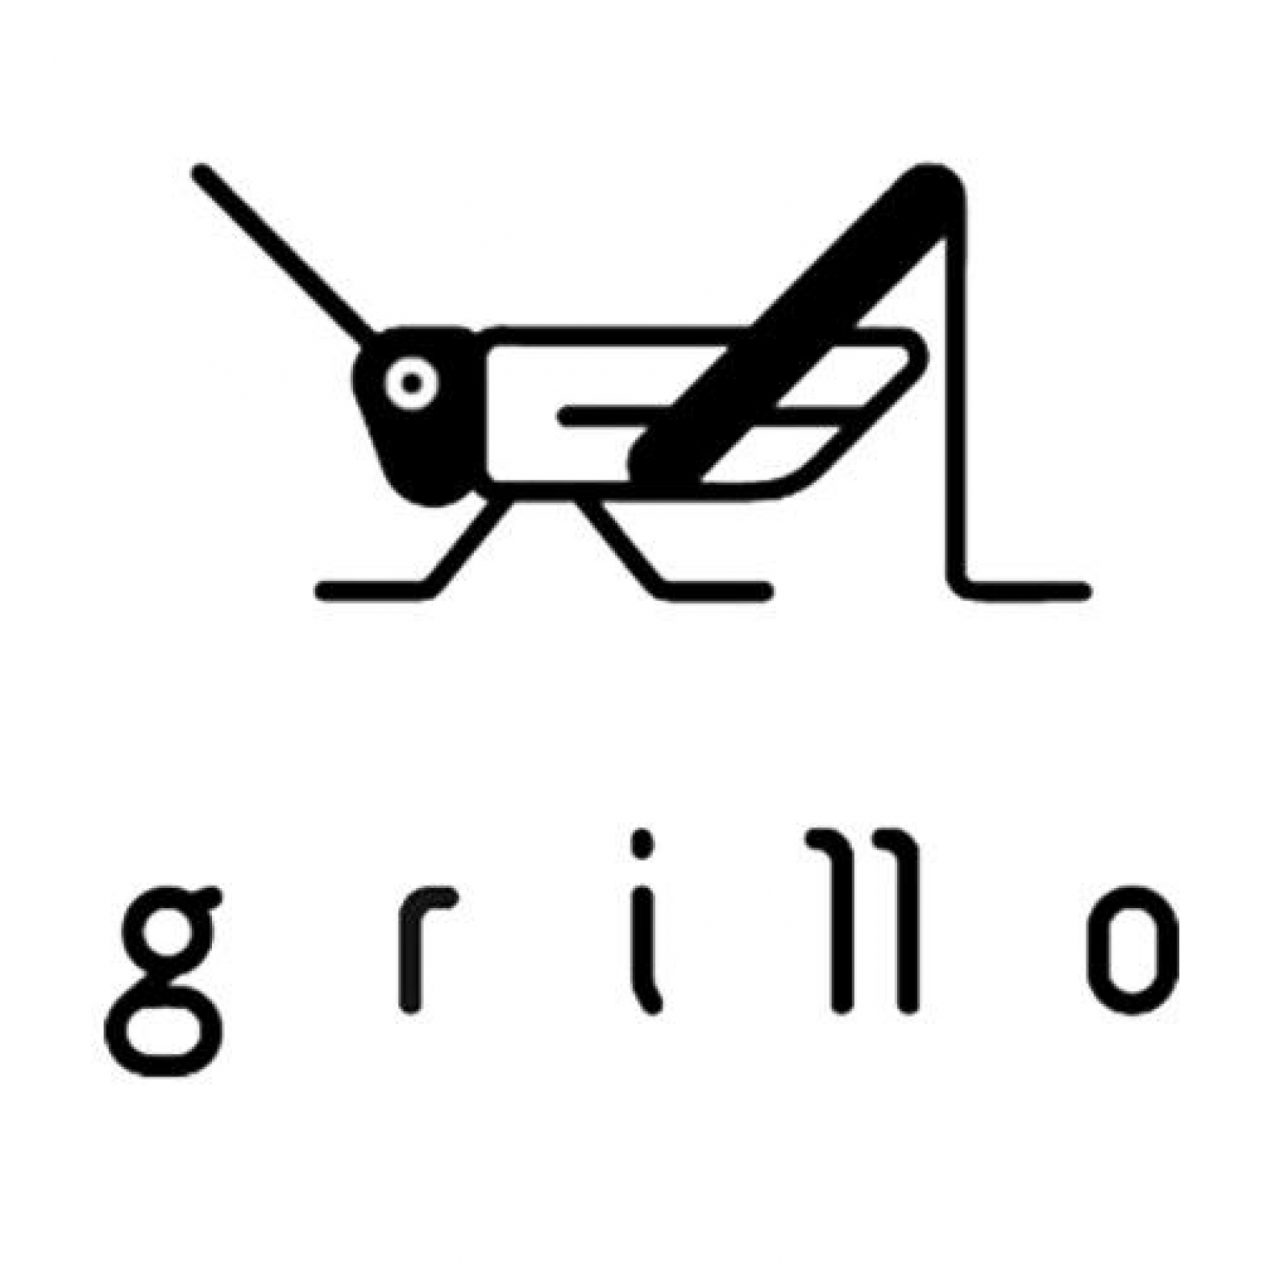 Bodega Grillo y luna logo